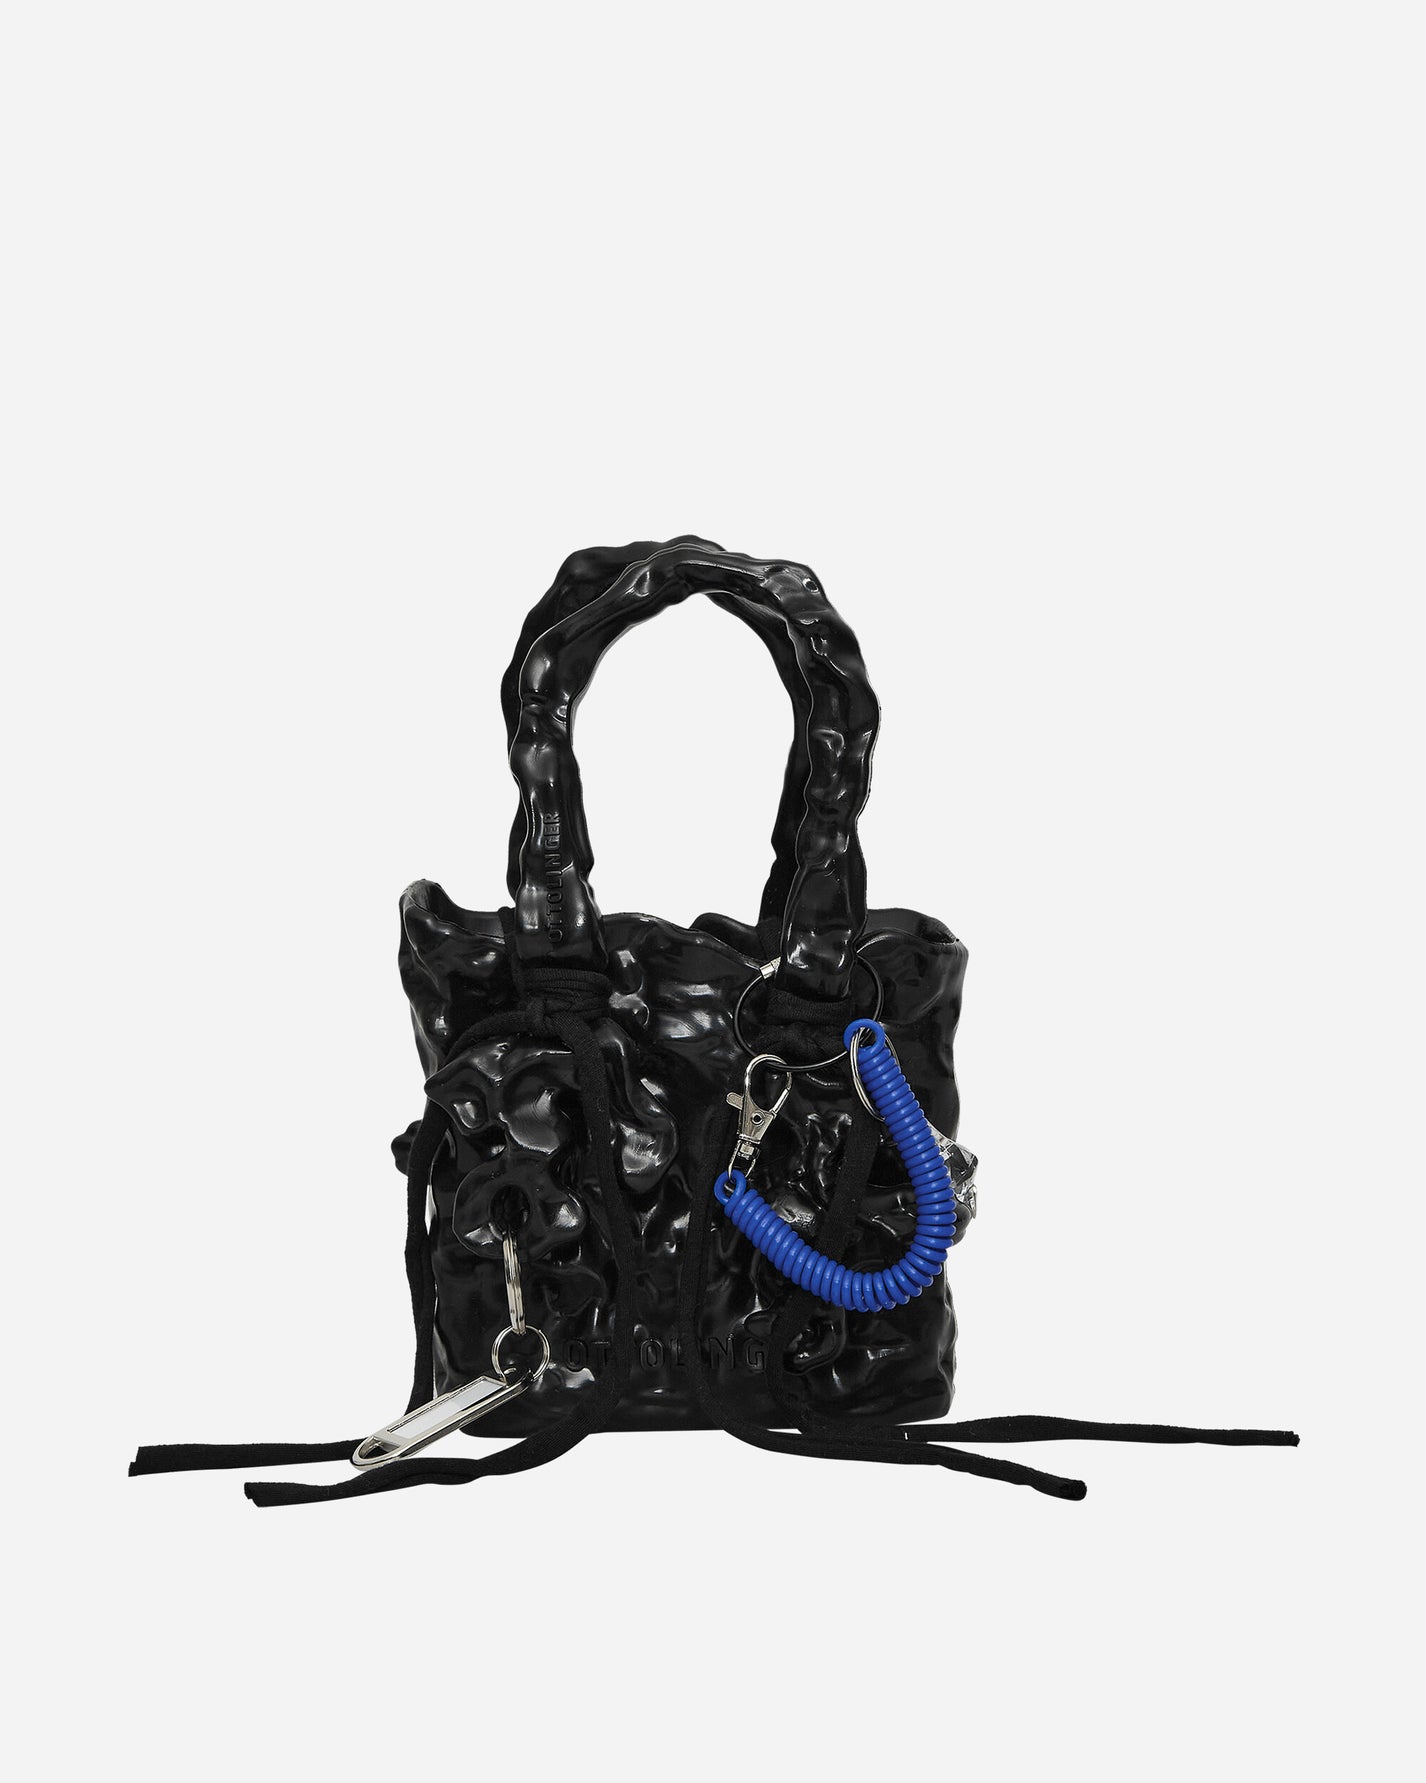 Ottolinger Wmns Signature Ceramic Bag Black Wash Bags and Backpacks Shoulder Bags 1272002421 BLK